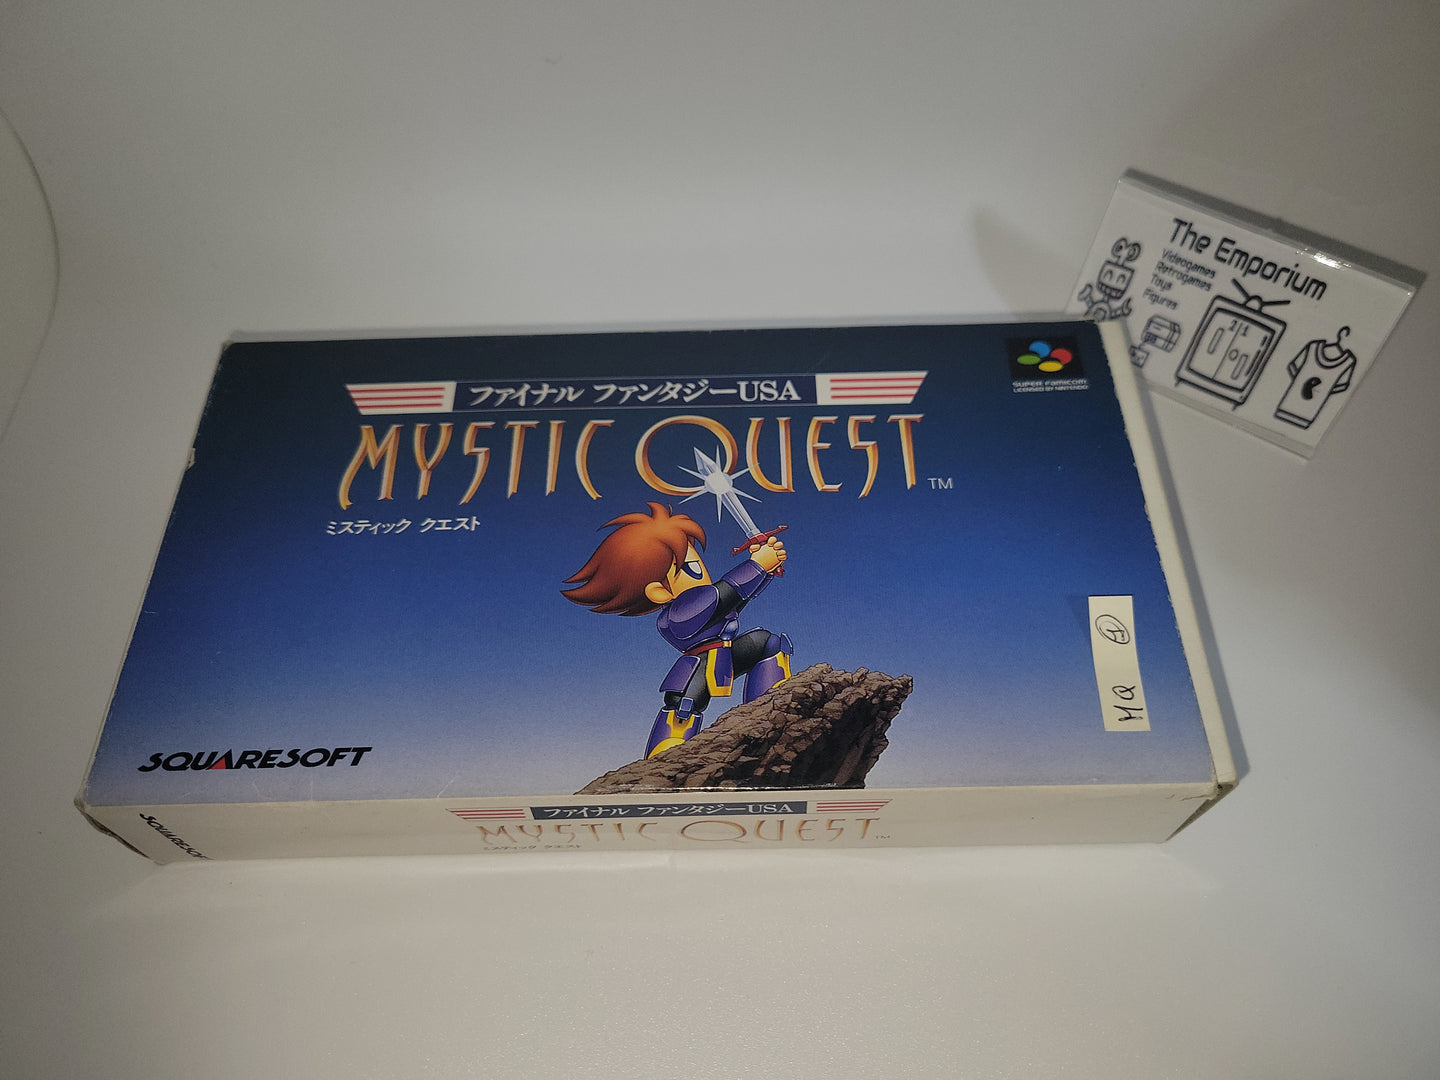 Final Fantasy USA: Mystic Quest - Nintendo Sfc Super Famicom